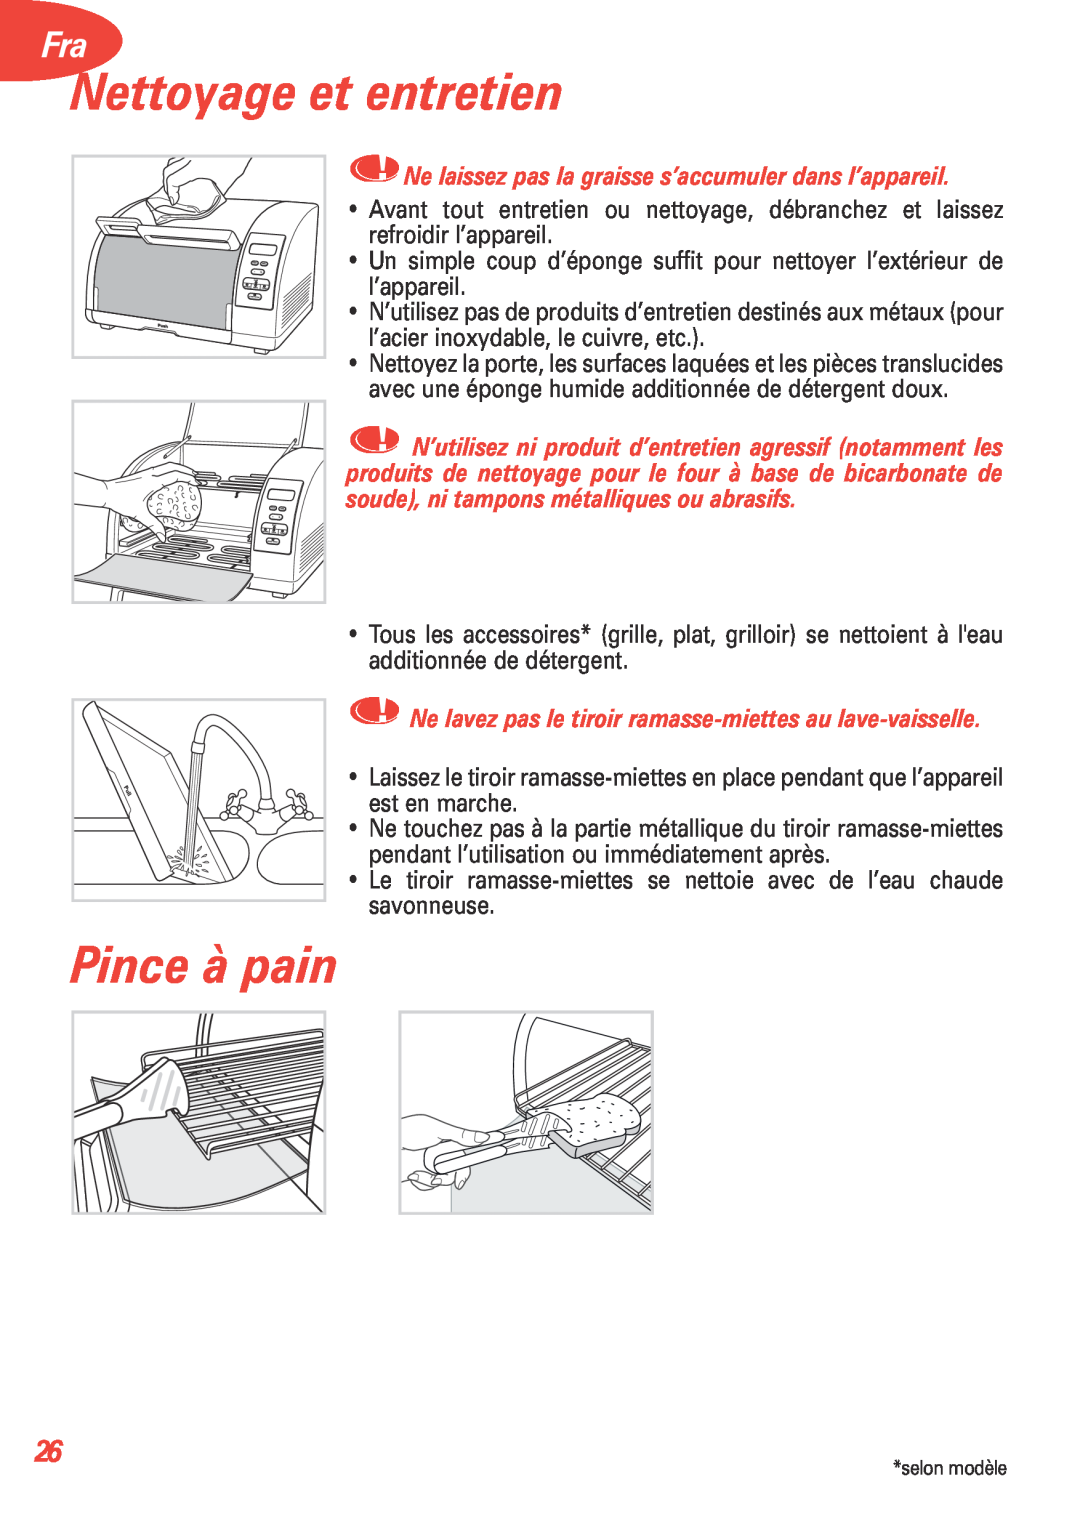 T-Fal 5252 manual Nettoyage et entretien, Pince à pain 